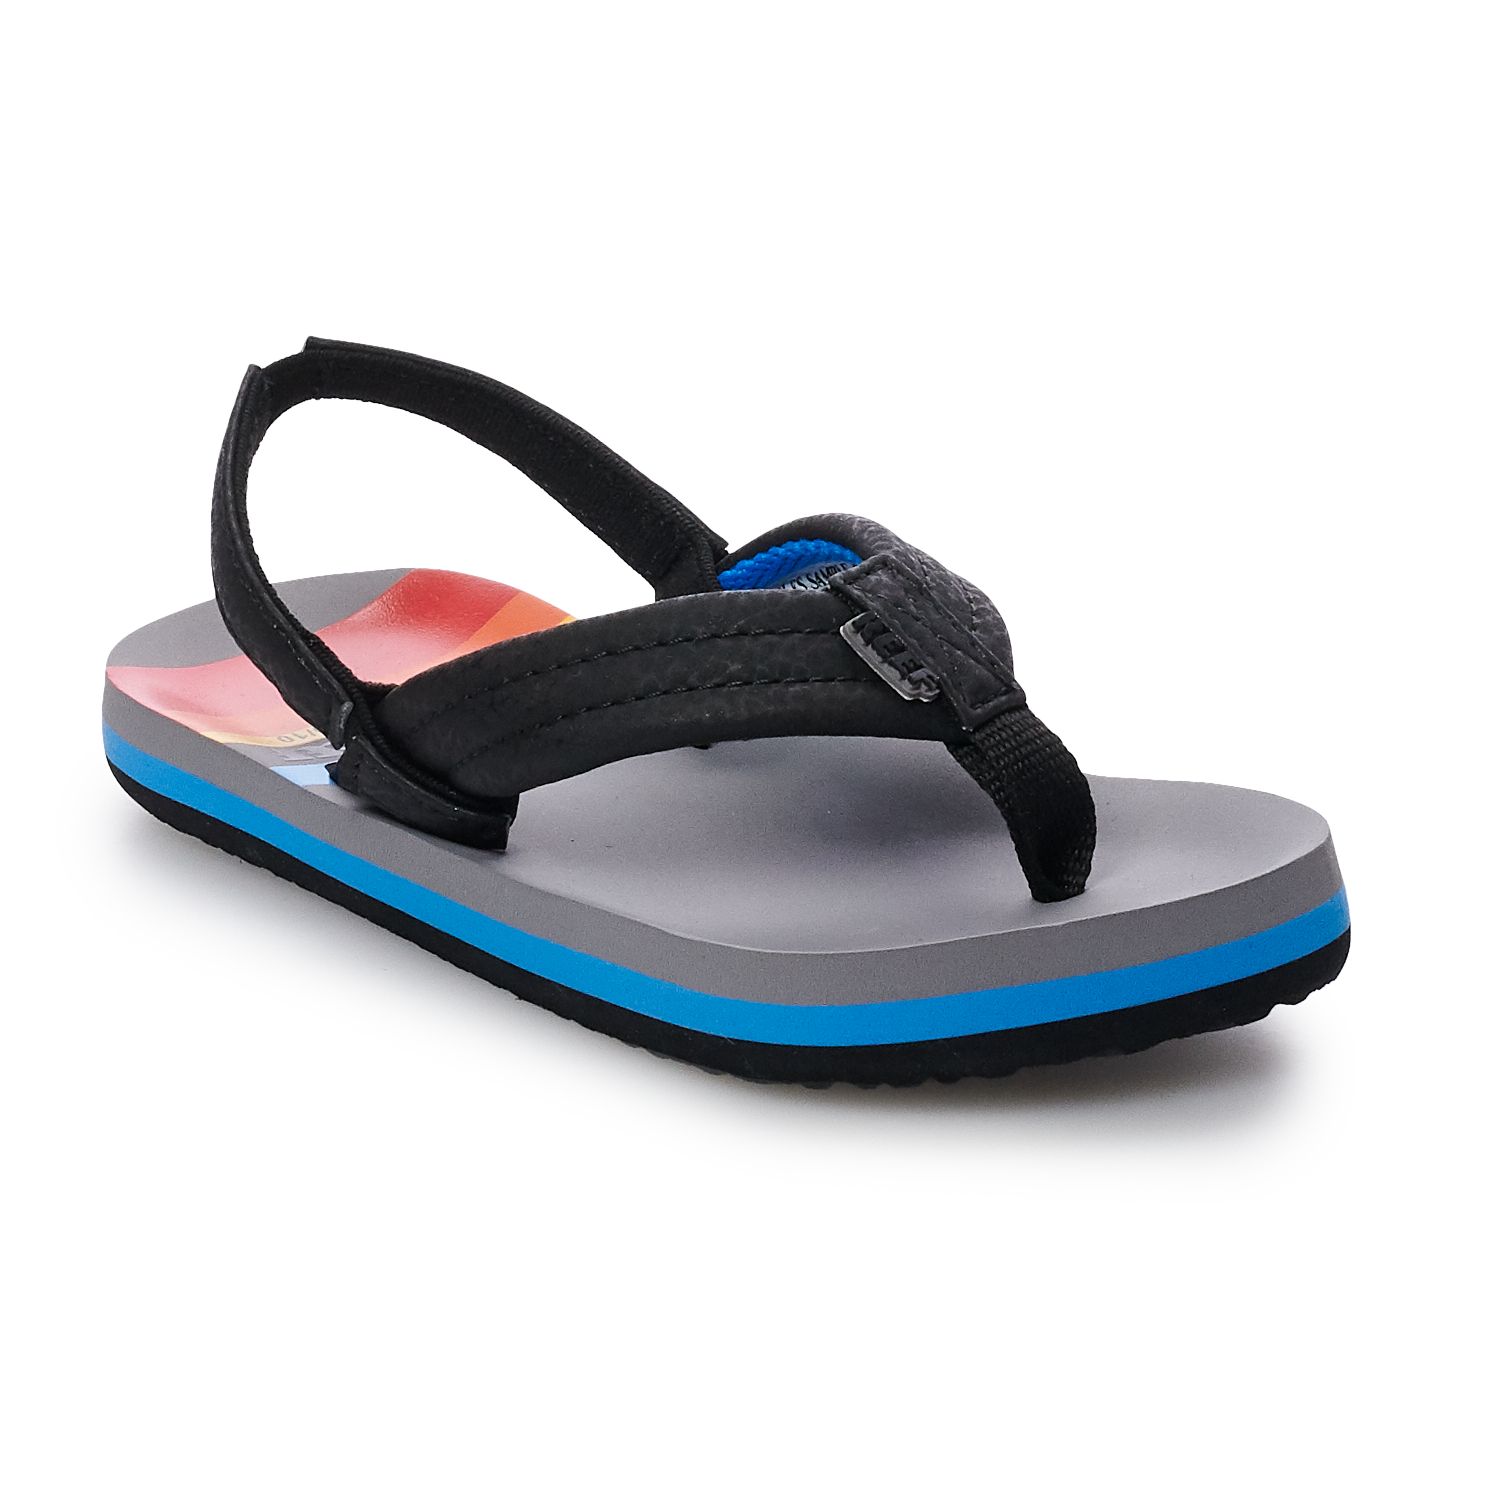 Orange Fish REEF Kids Boys Ahi Flip Flops Sandals Beach Shoes Summer Footwear